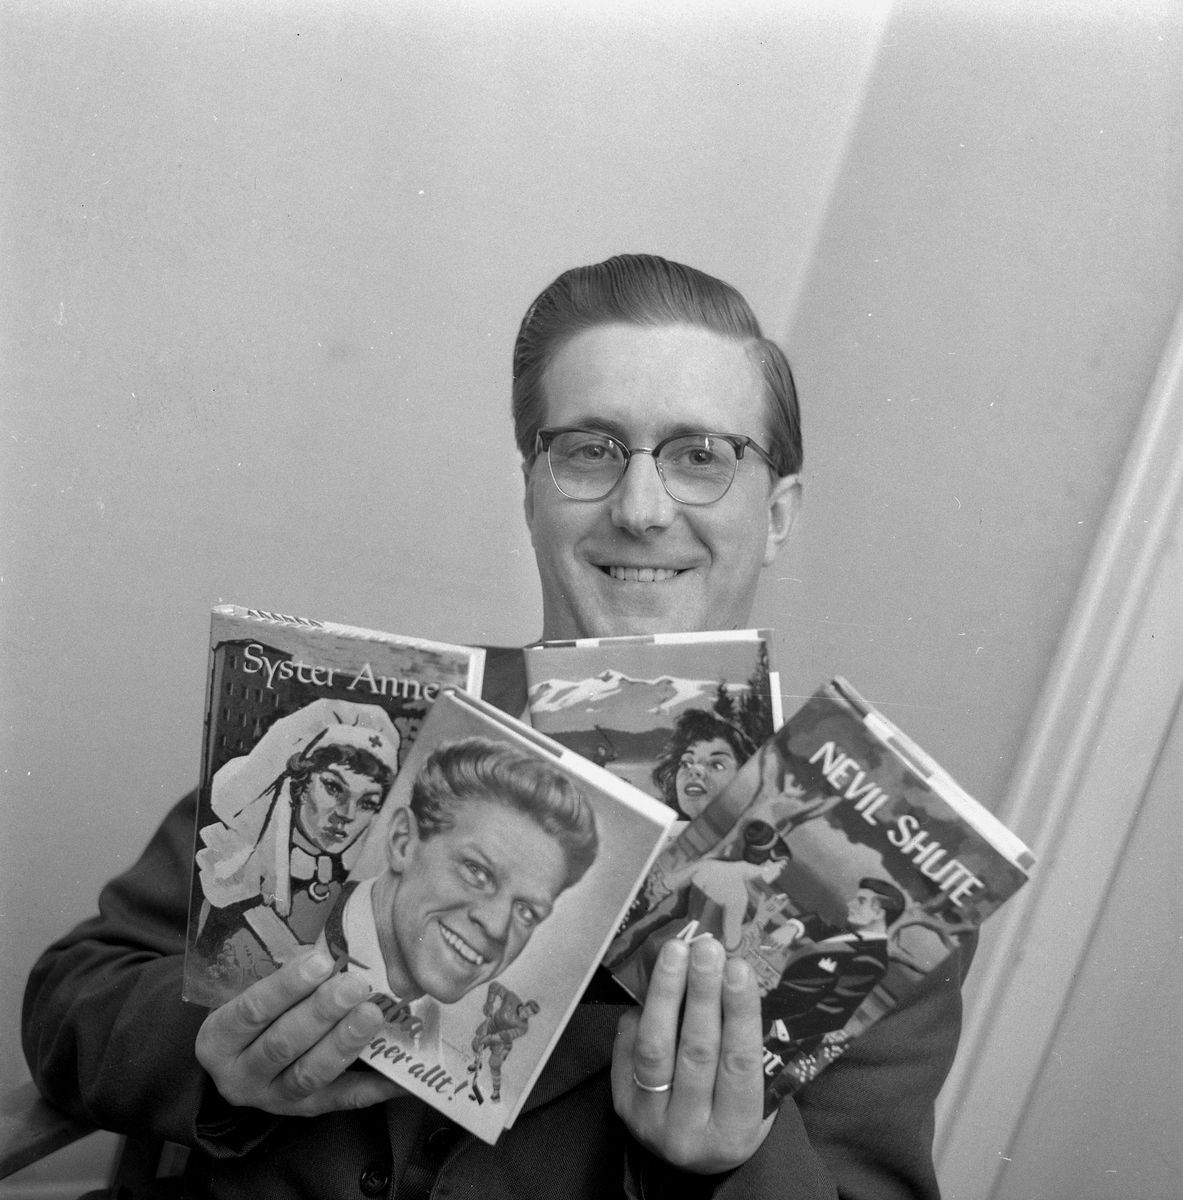 Böcker i tobaksaffär.
15 november 1958.